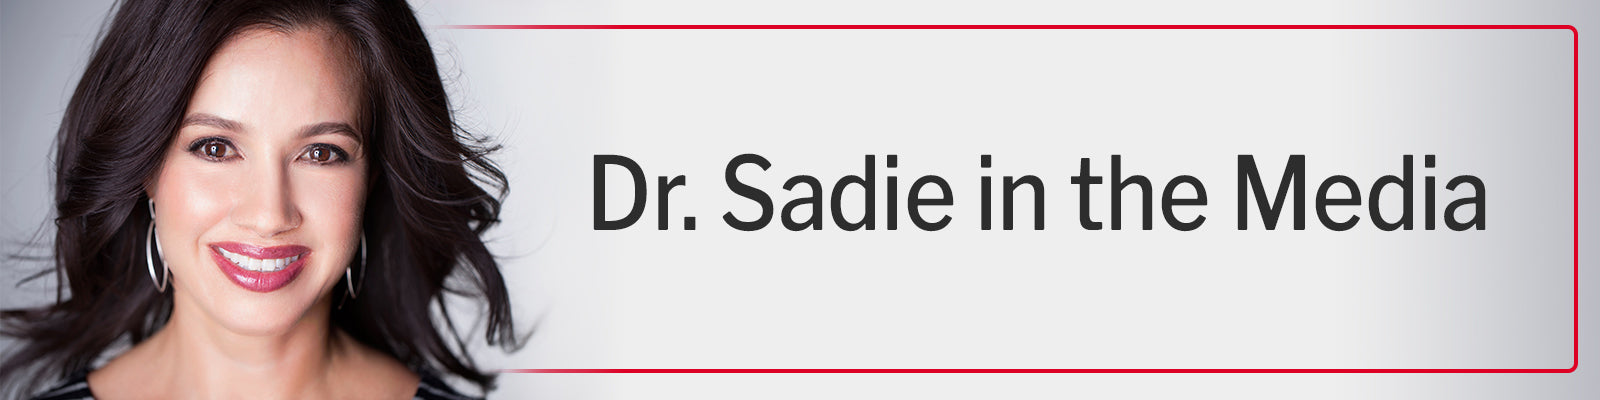 Dr. Sadie in the Media